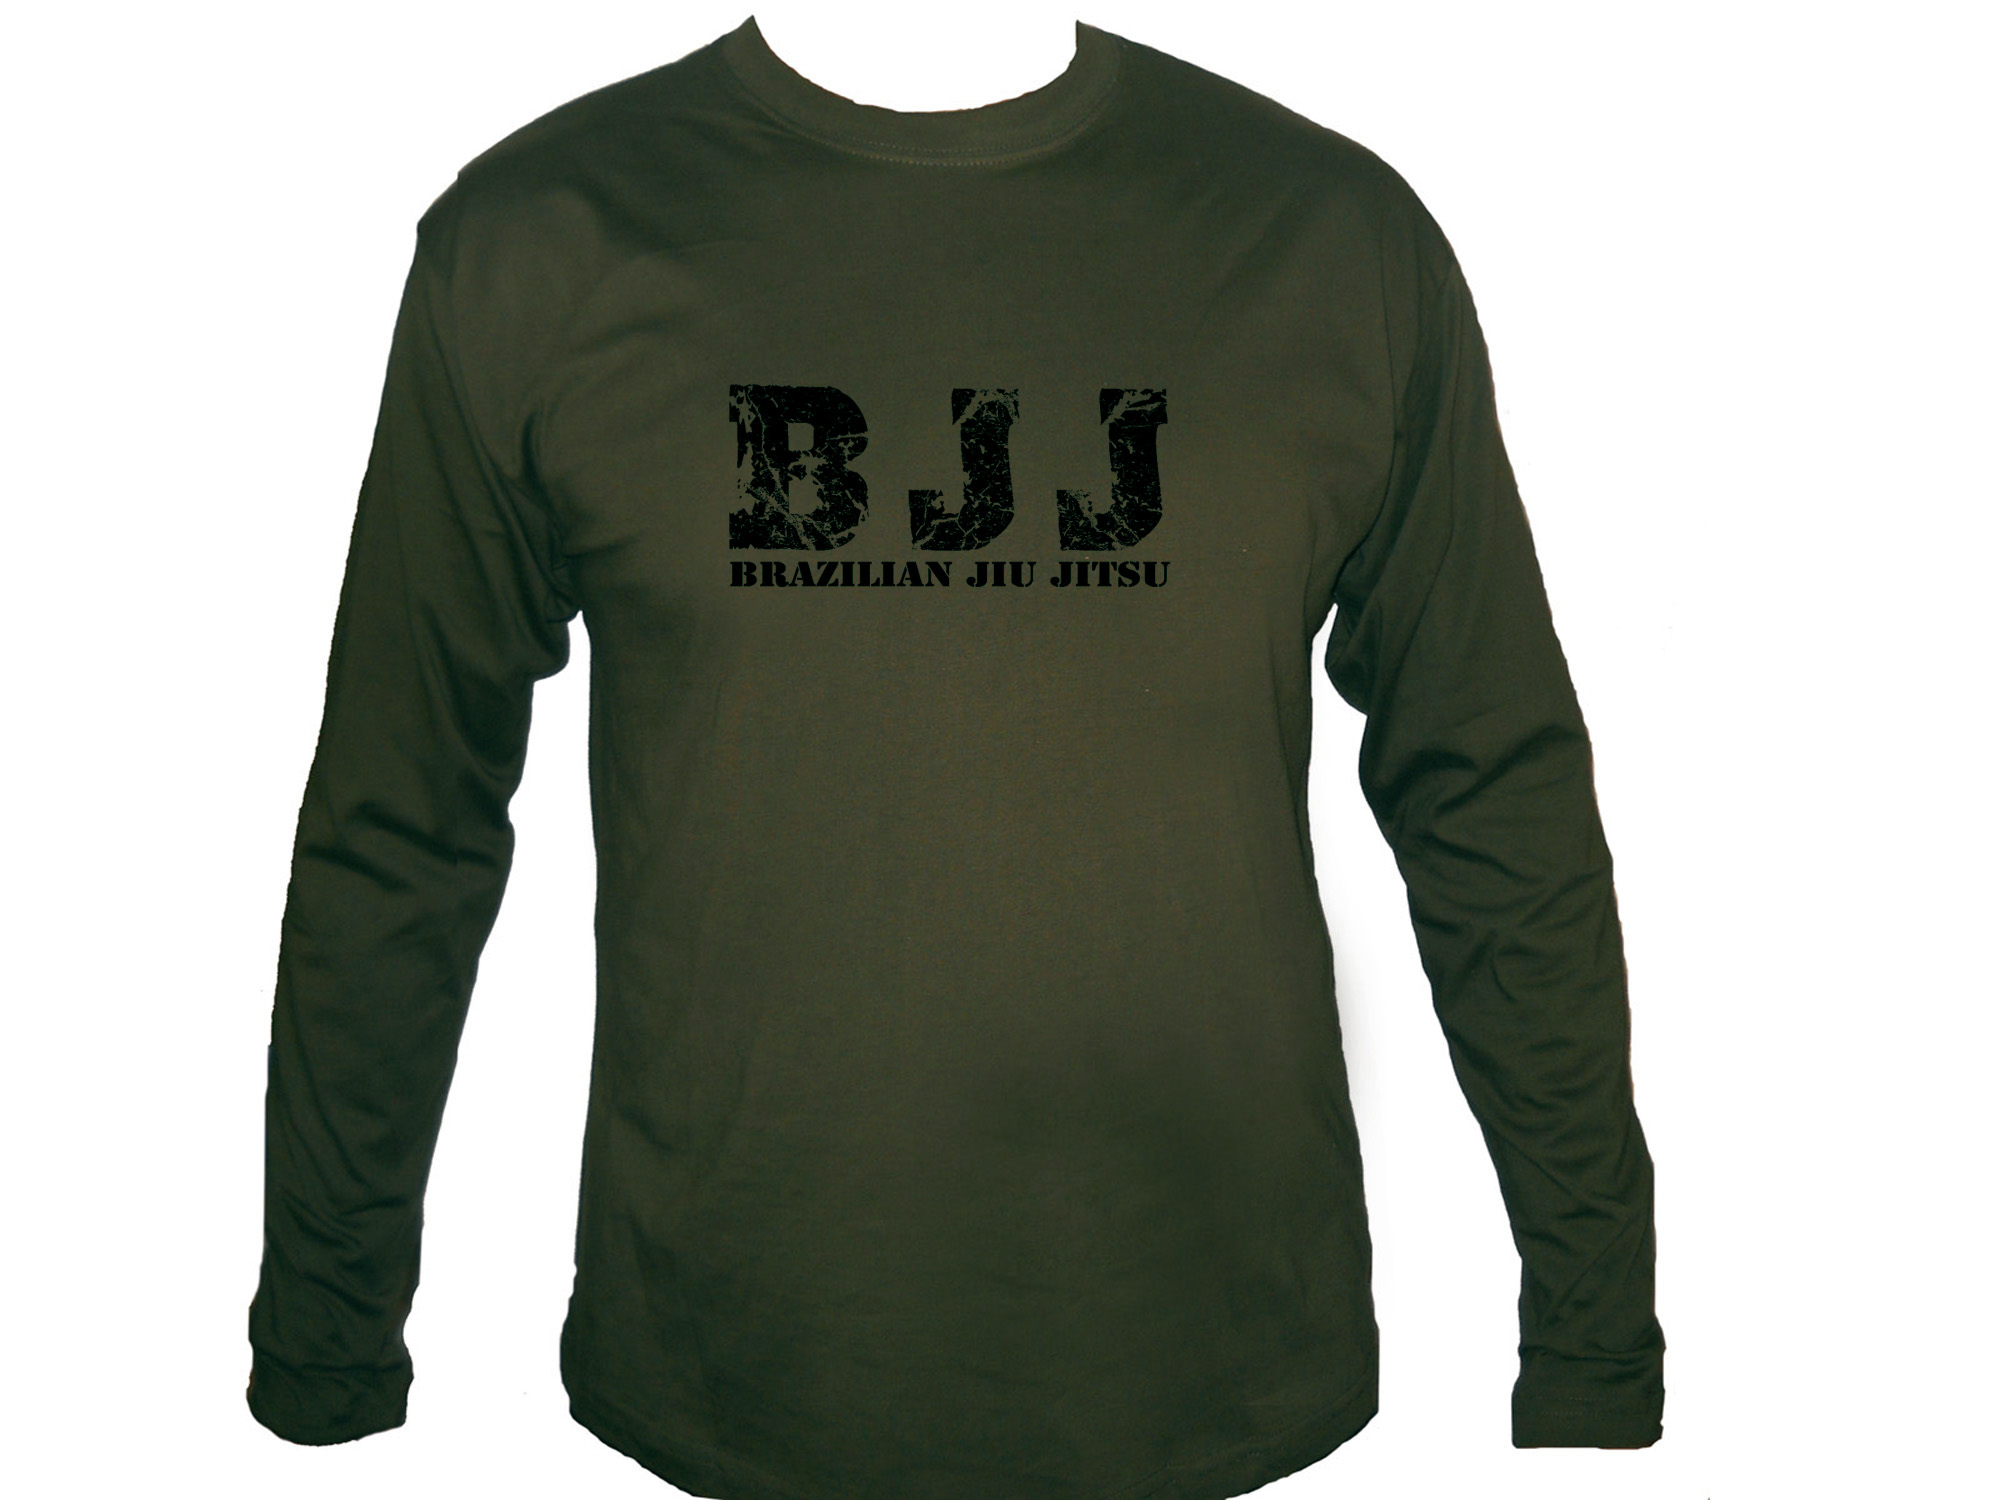 BJJ Brazilian Jiu jitsu jijitsu army green sleeved t-shirt